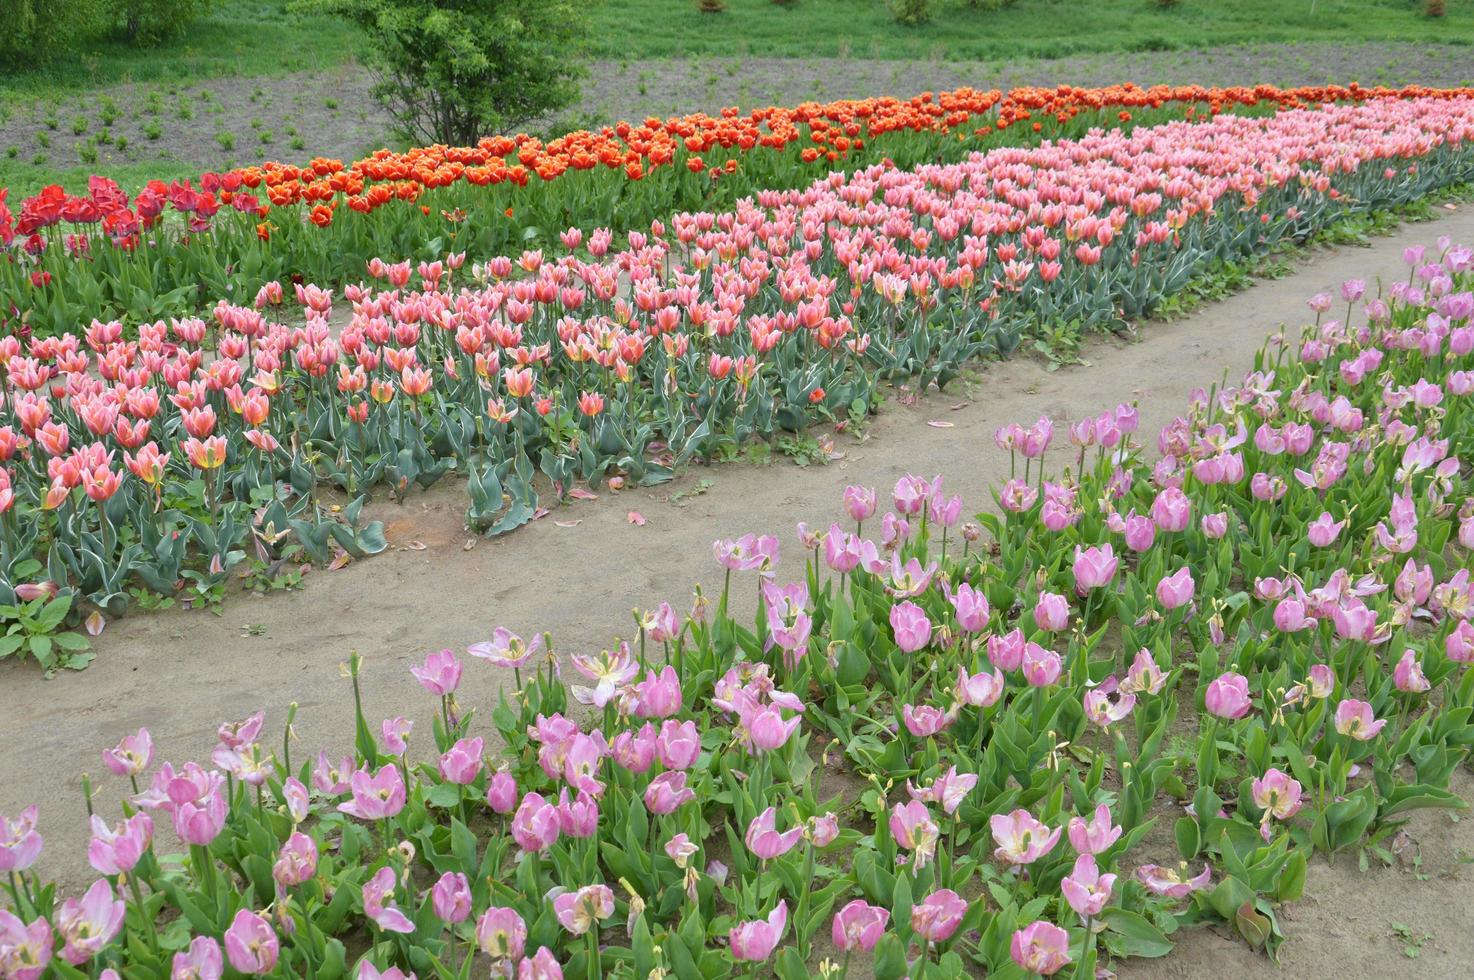 Textur eines Feldes von mehrfarbigen blühenden Tulpen foto